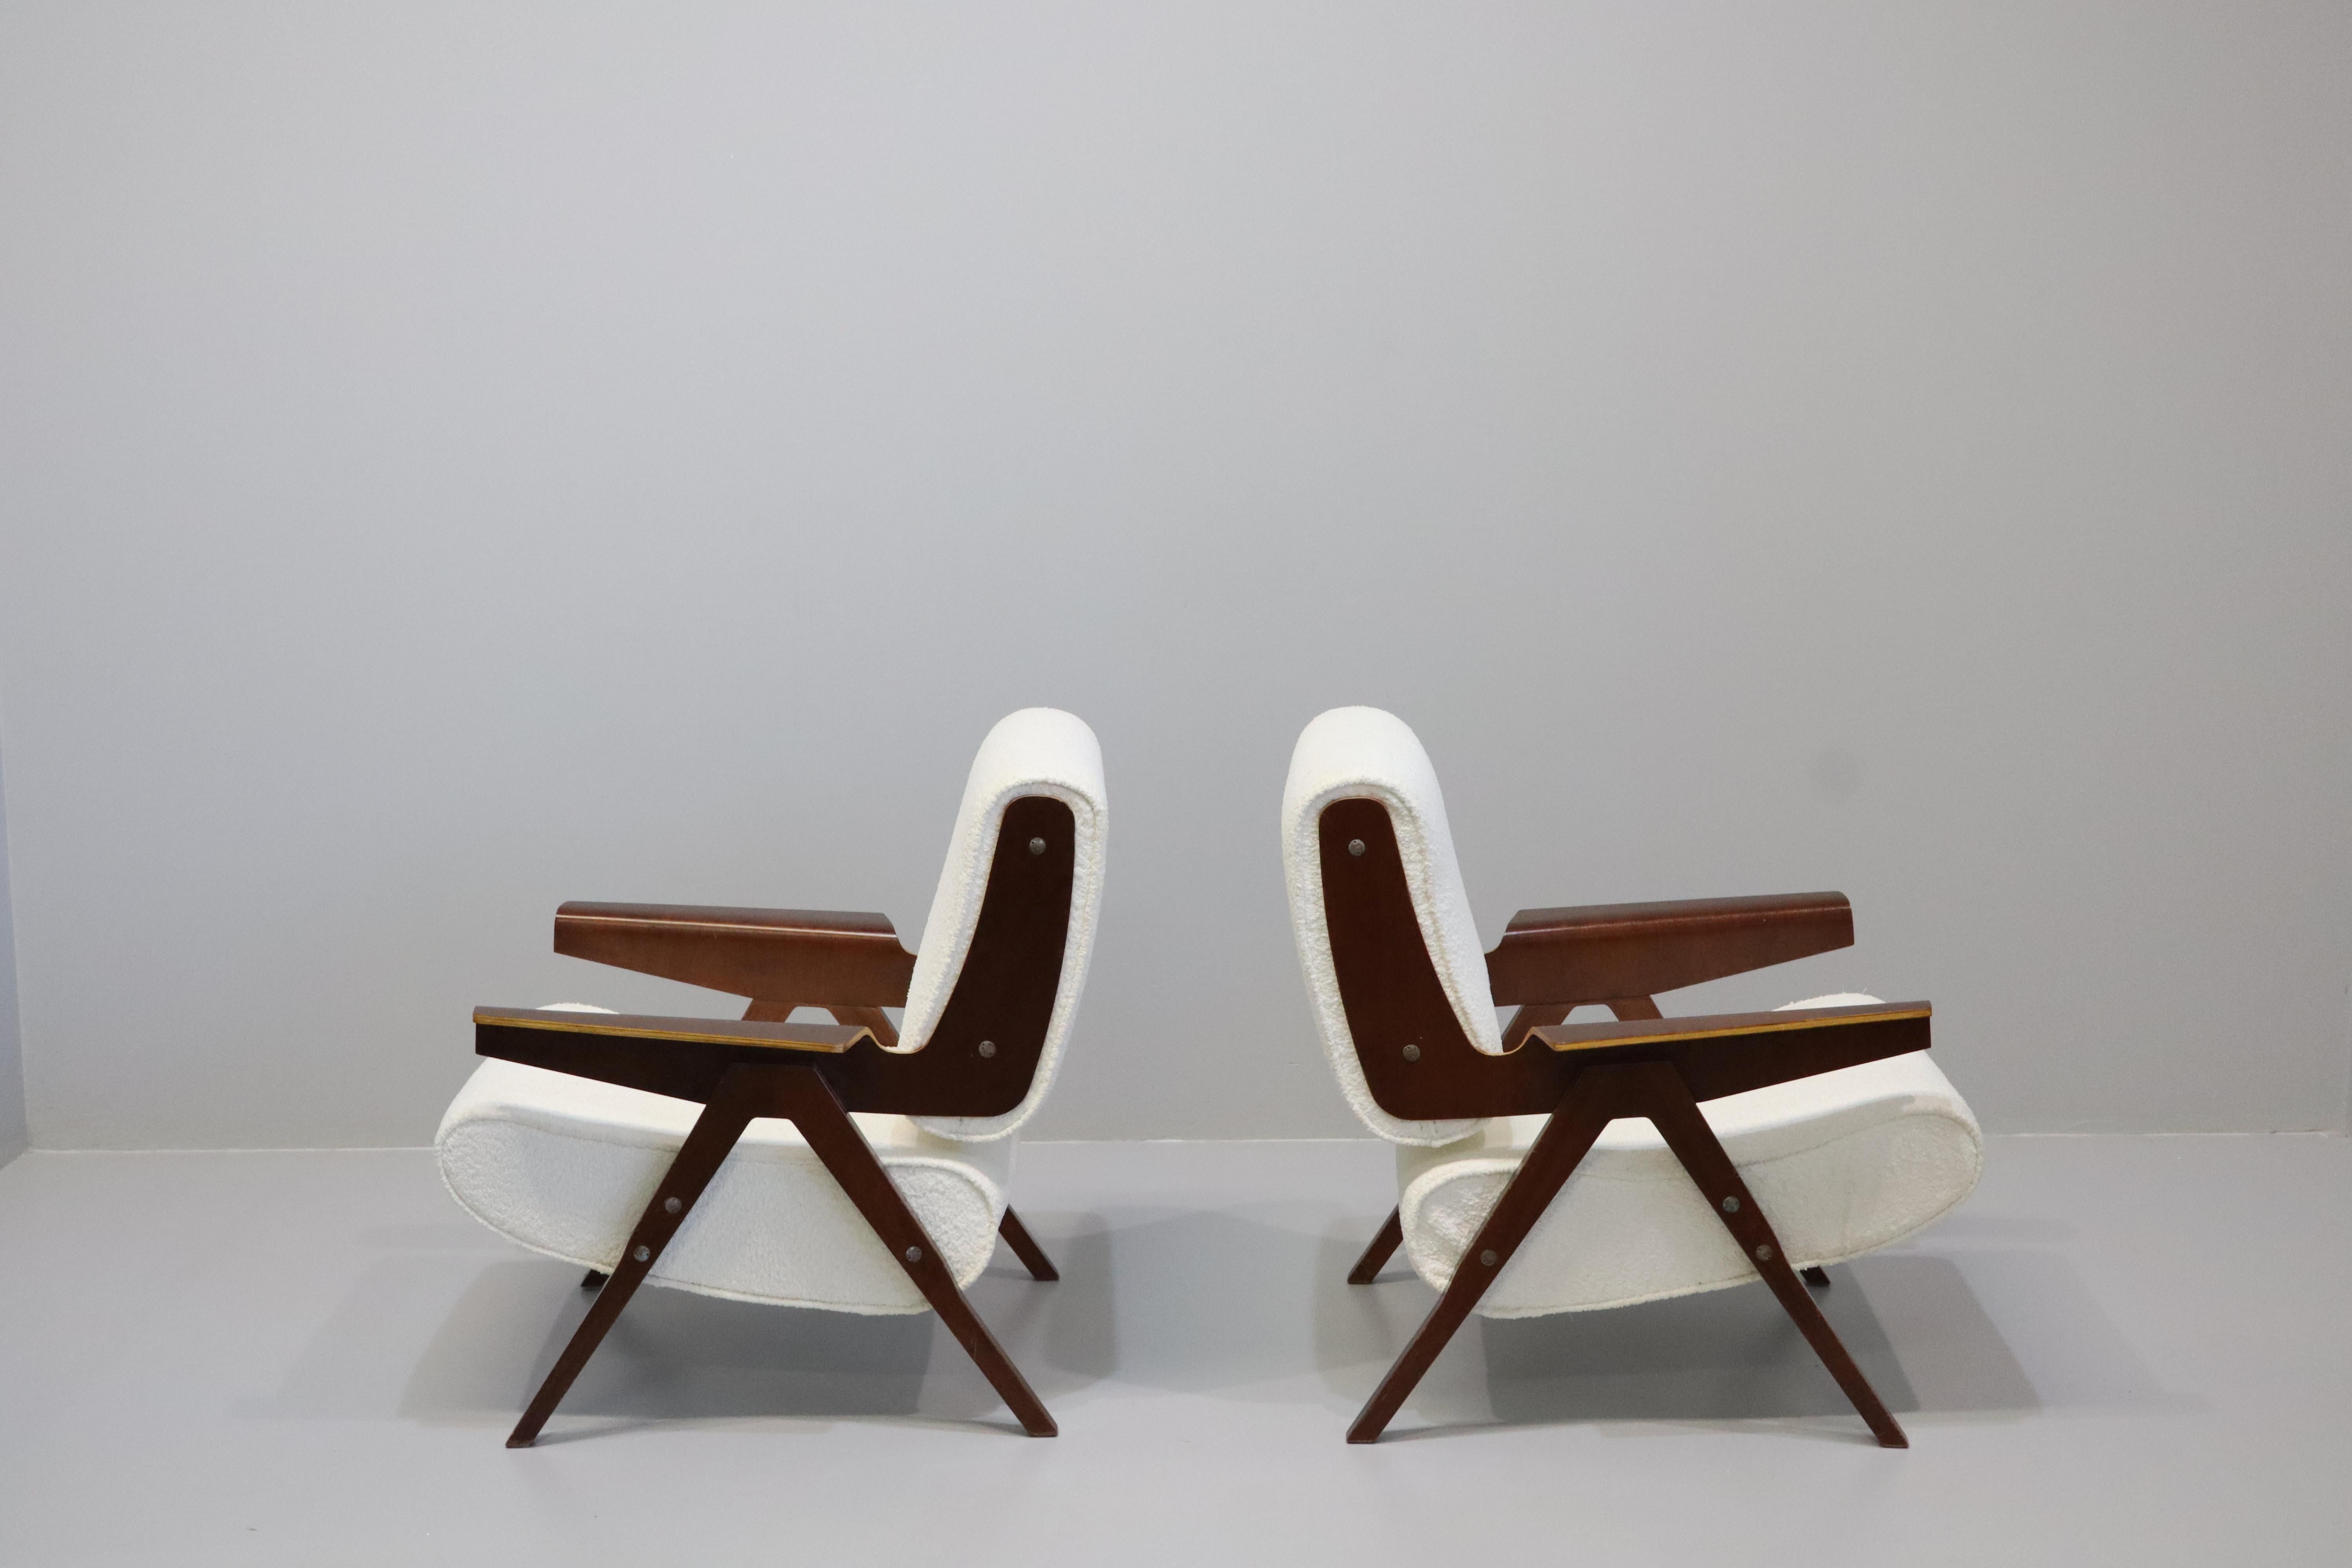 Incredibile coppia di sedie modello 831 di Gianfranco Frattini per Cassina, anni Cinquanta. 
Questi modelli di sedie sono eccezionalmente rari. 
Il fantastico design del famoso designer italiano Gianfranco Frattini mostra le sue caratteristiche